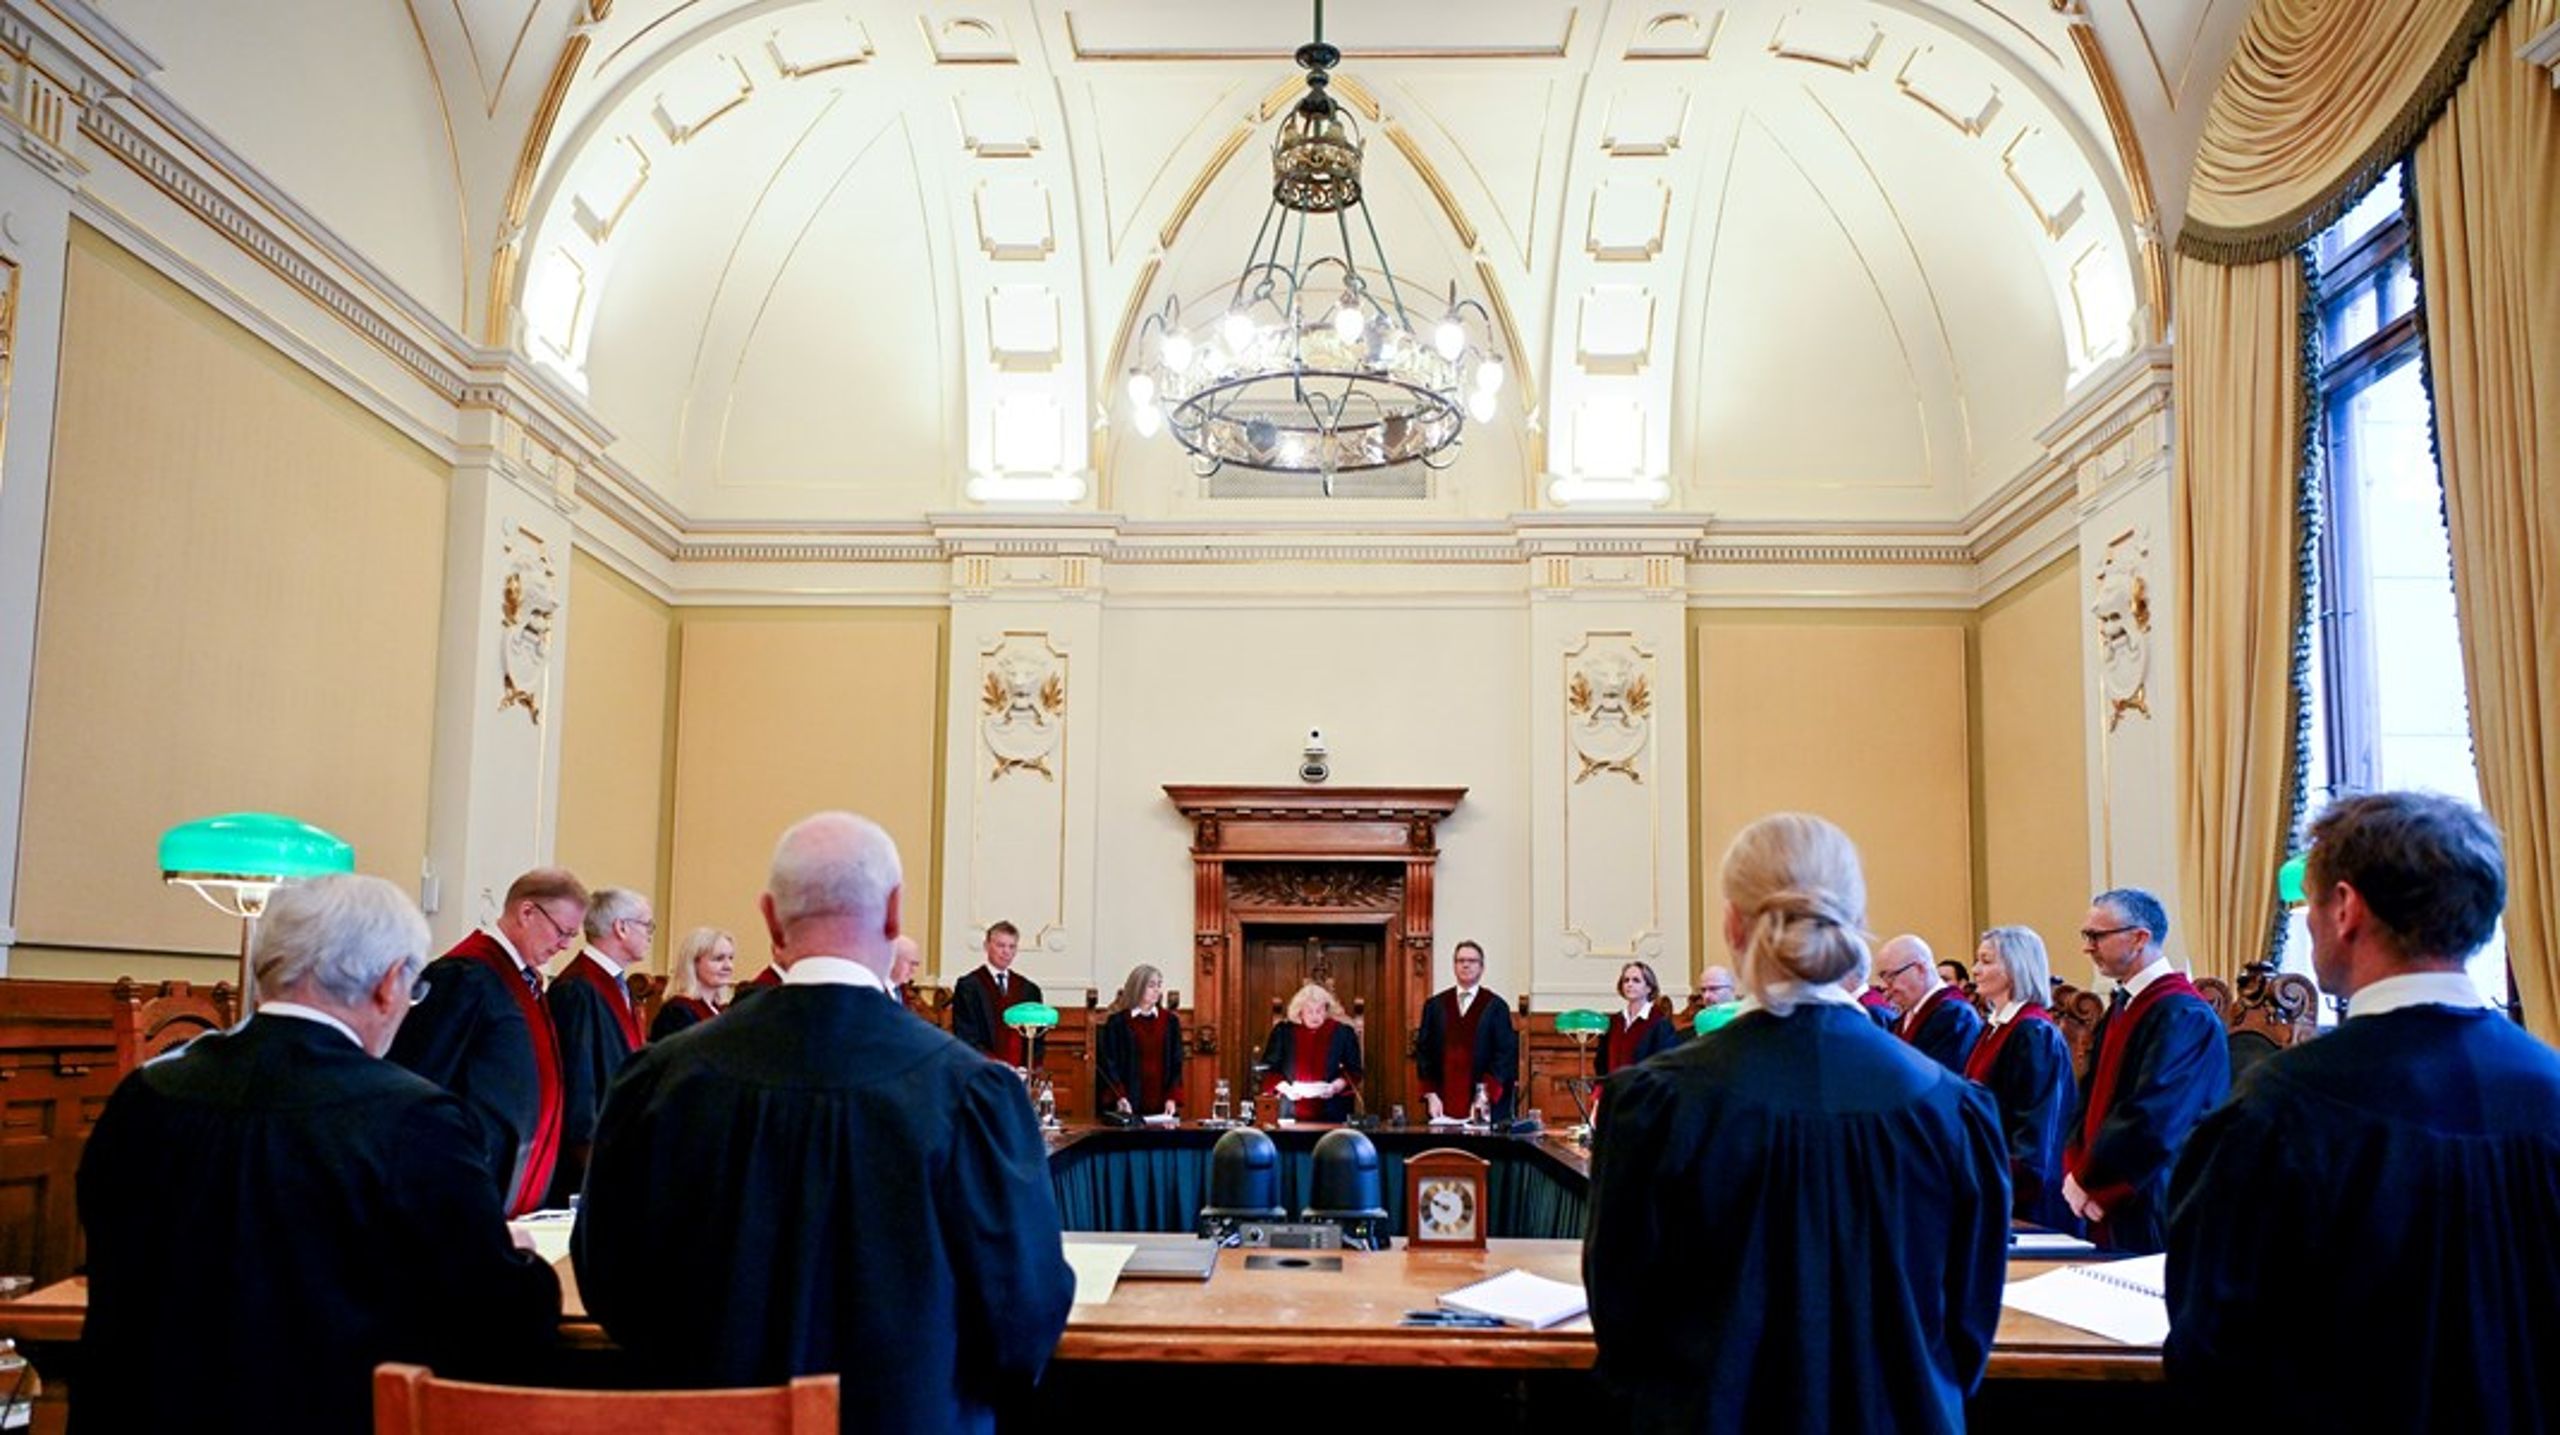 Alle de 17 kappekledte dommerne var enige om at Acer ikke har noen nevneverdig beslutningsmyndighet over Norge. Nei til EUs søksmål mot staten ble derfor klart avvist.&nbsp;